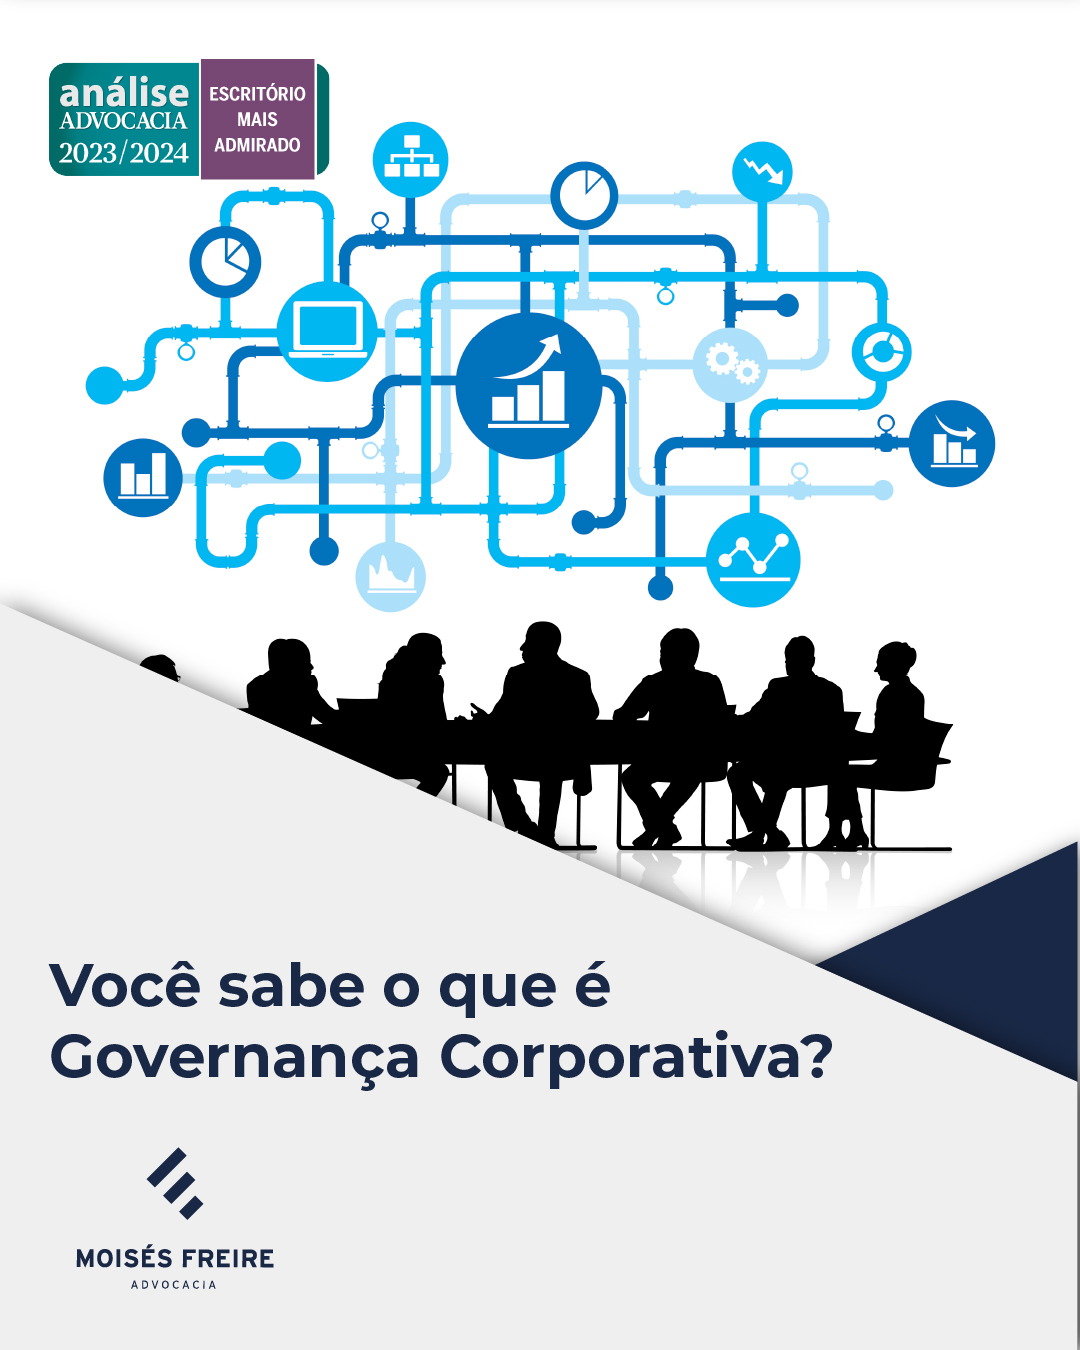 Você sabe o que é Governança Corporativa?